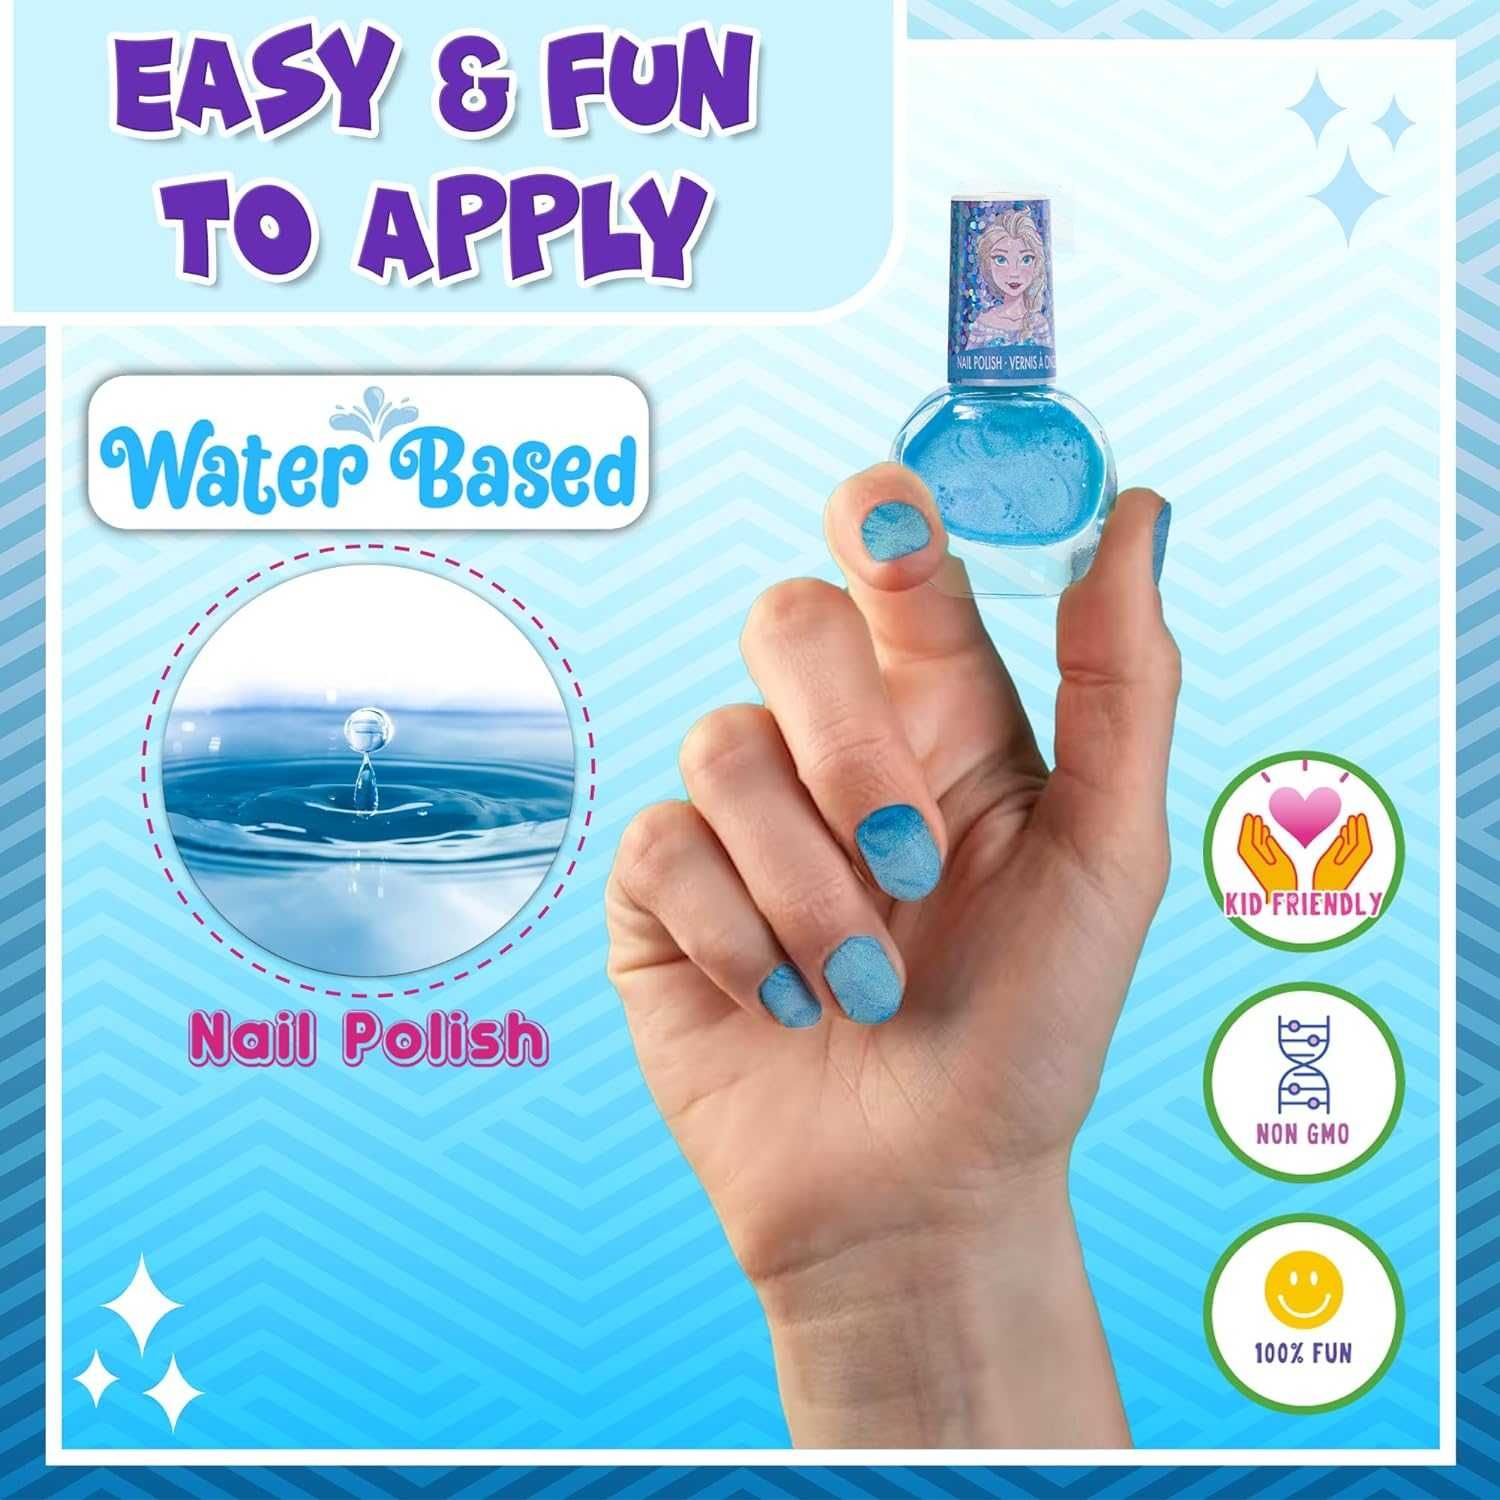 лаки для ногтей для девочки Холодное сердце с 3 лет Disney Frozen